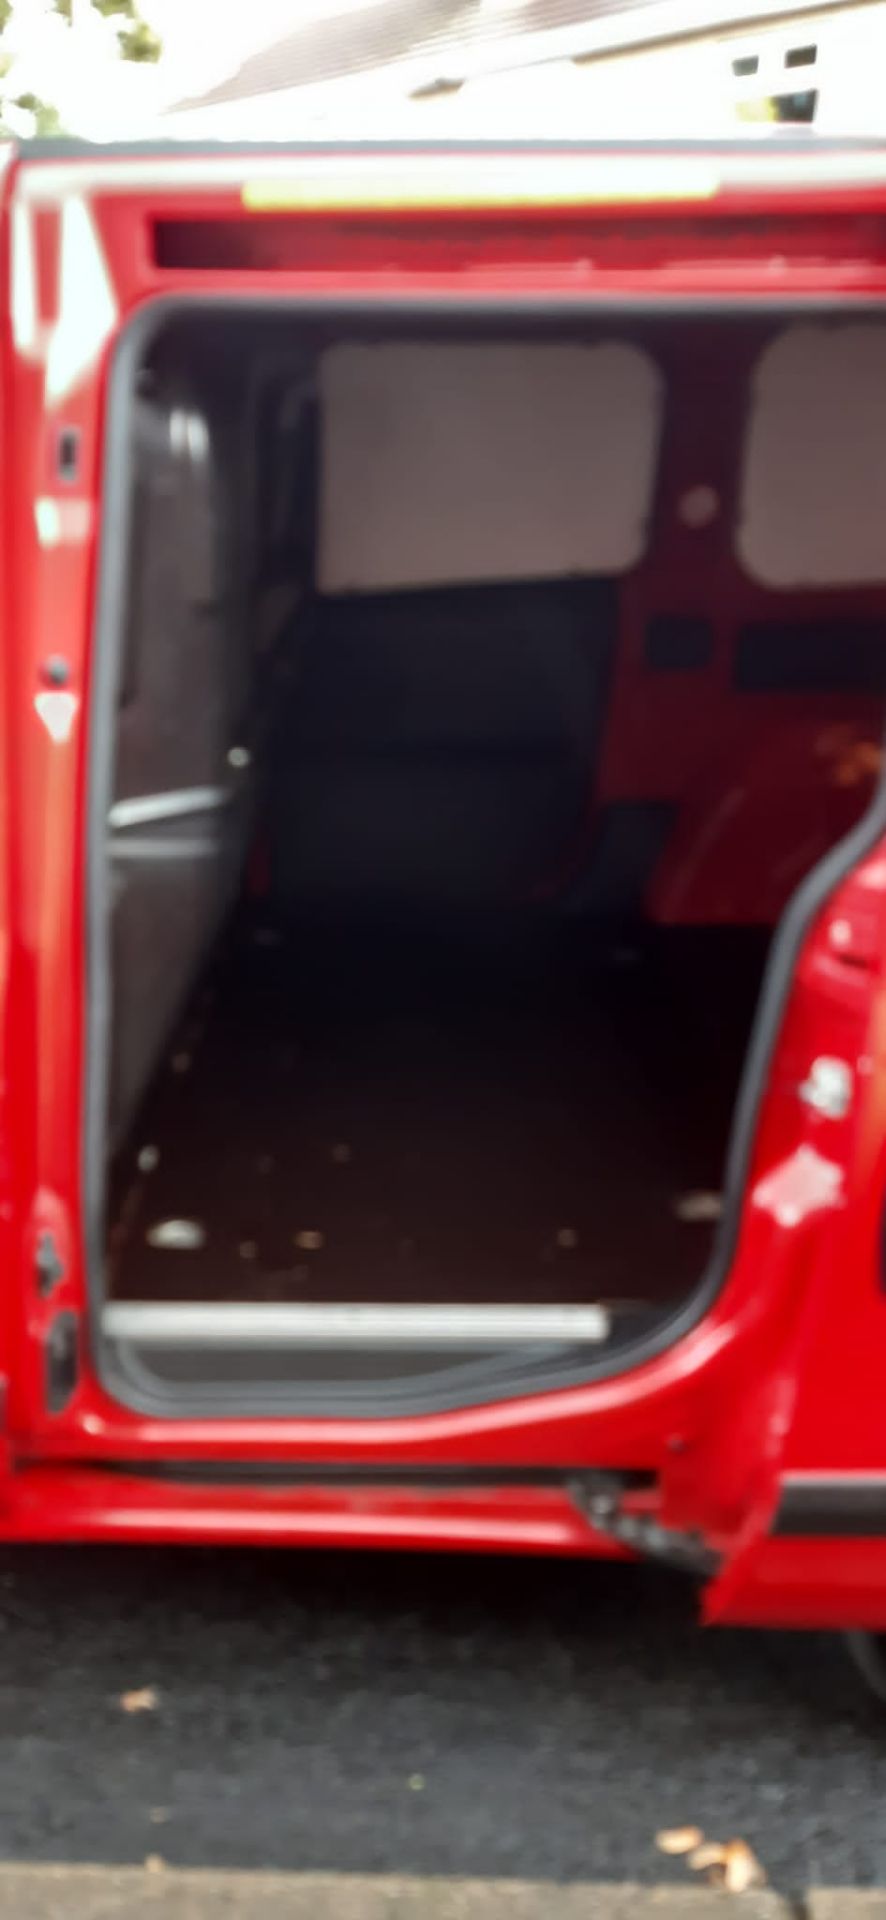 2013 FIAT DOBLO 16V MULTIJET RED PANEL VAN - LOW 43,000 MILES *NO VAT* - Image 15 of 17